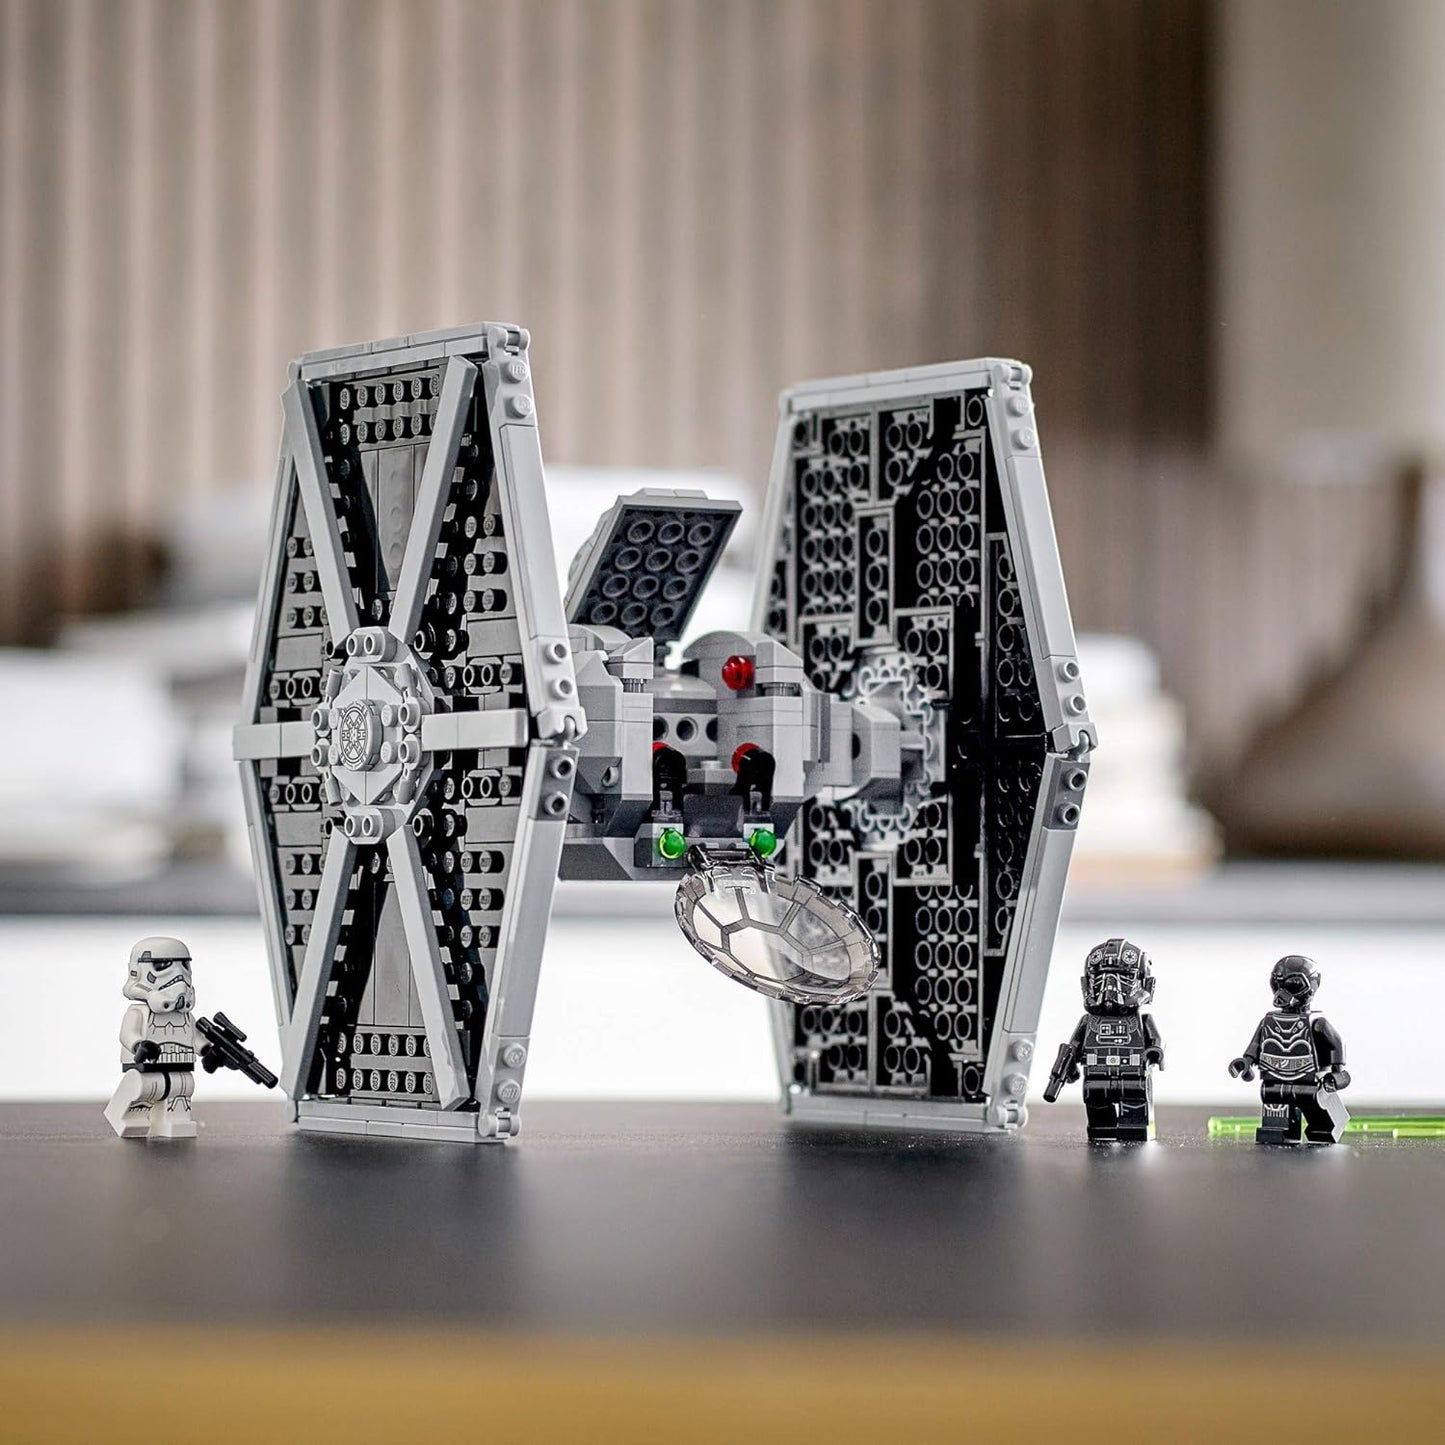 Lego Star Wars Imperial TIE Fighter 75300 Juguete de construcción con Stormtrooper y minifiguras piloto de la saga Skywalker